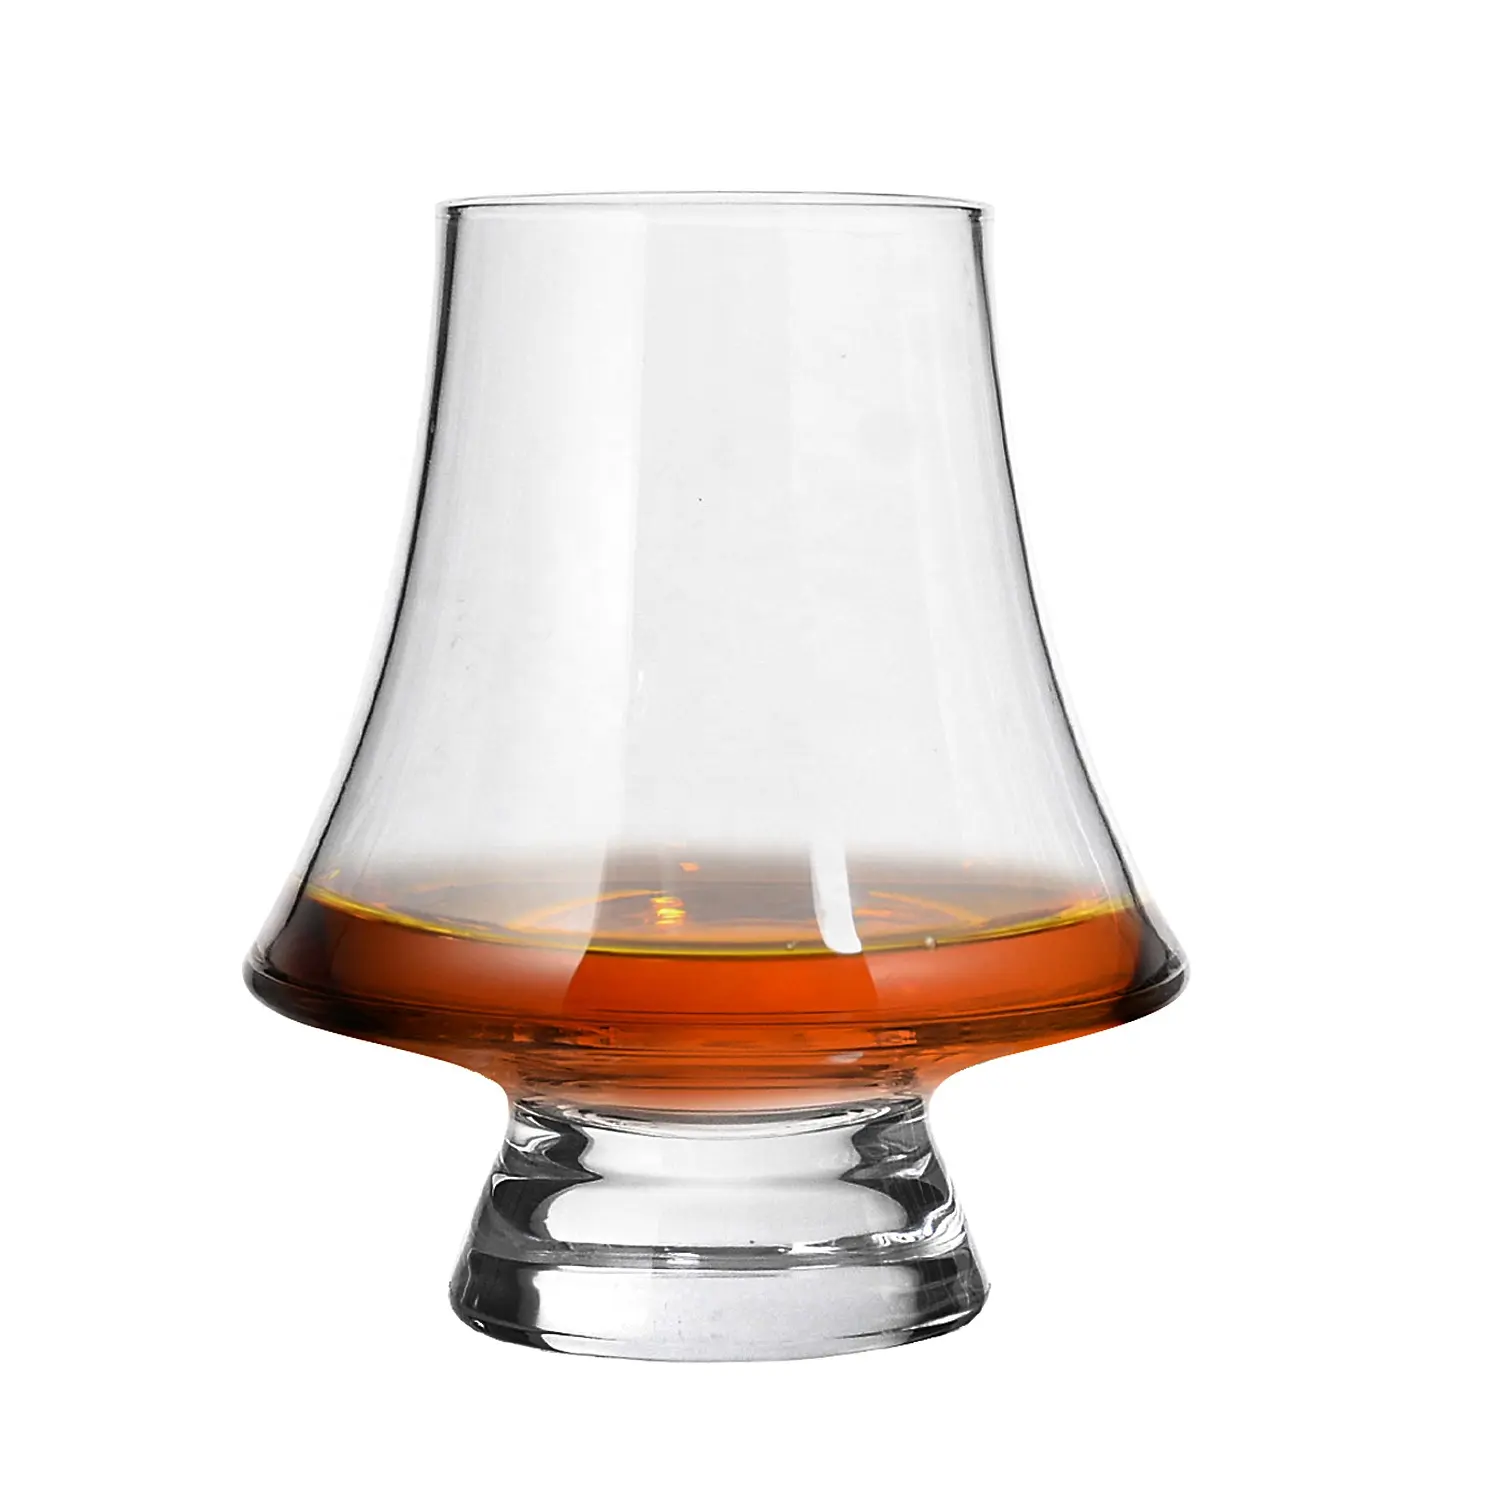 Custom Handgemaakte Klassieke Ouderwetse Kristalheldere Whisky Glazen Beker Japanse Cognac Snifter Shot Whisky Proeverij Glazen